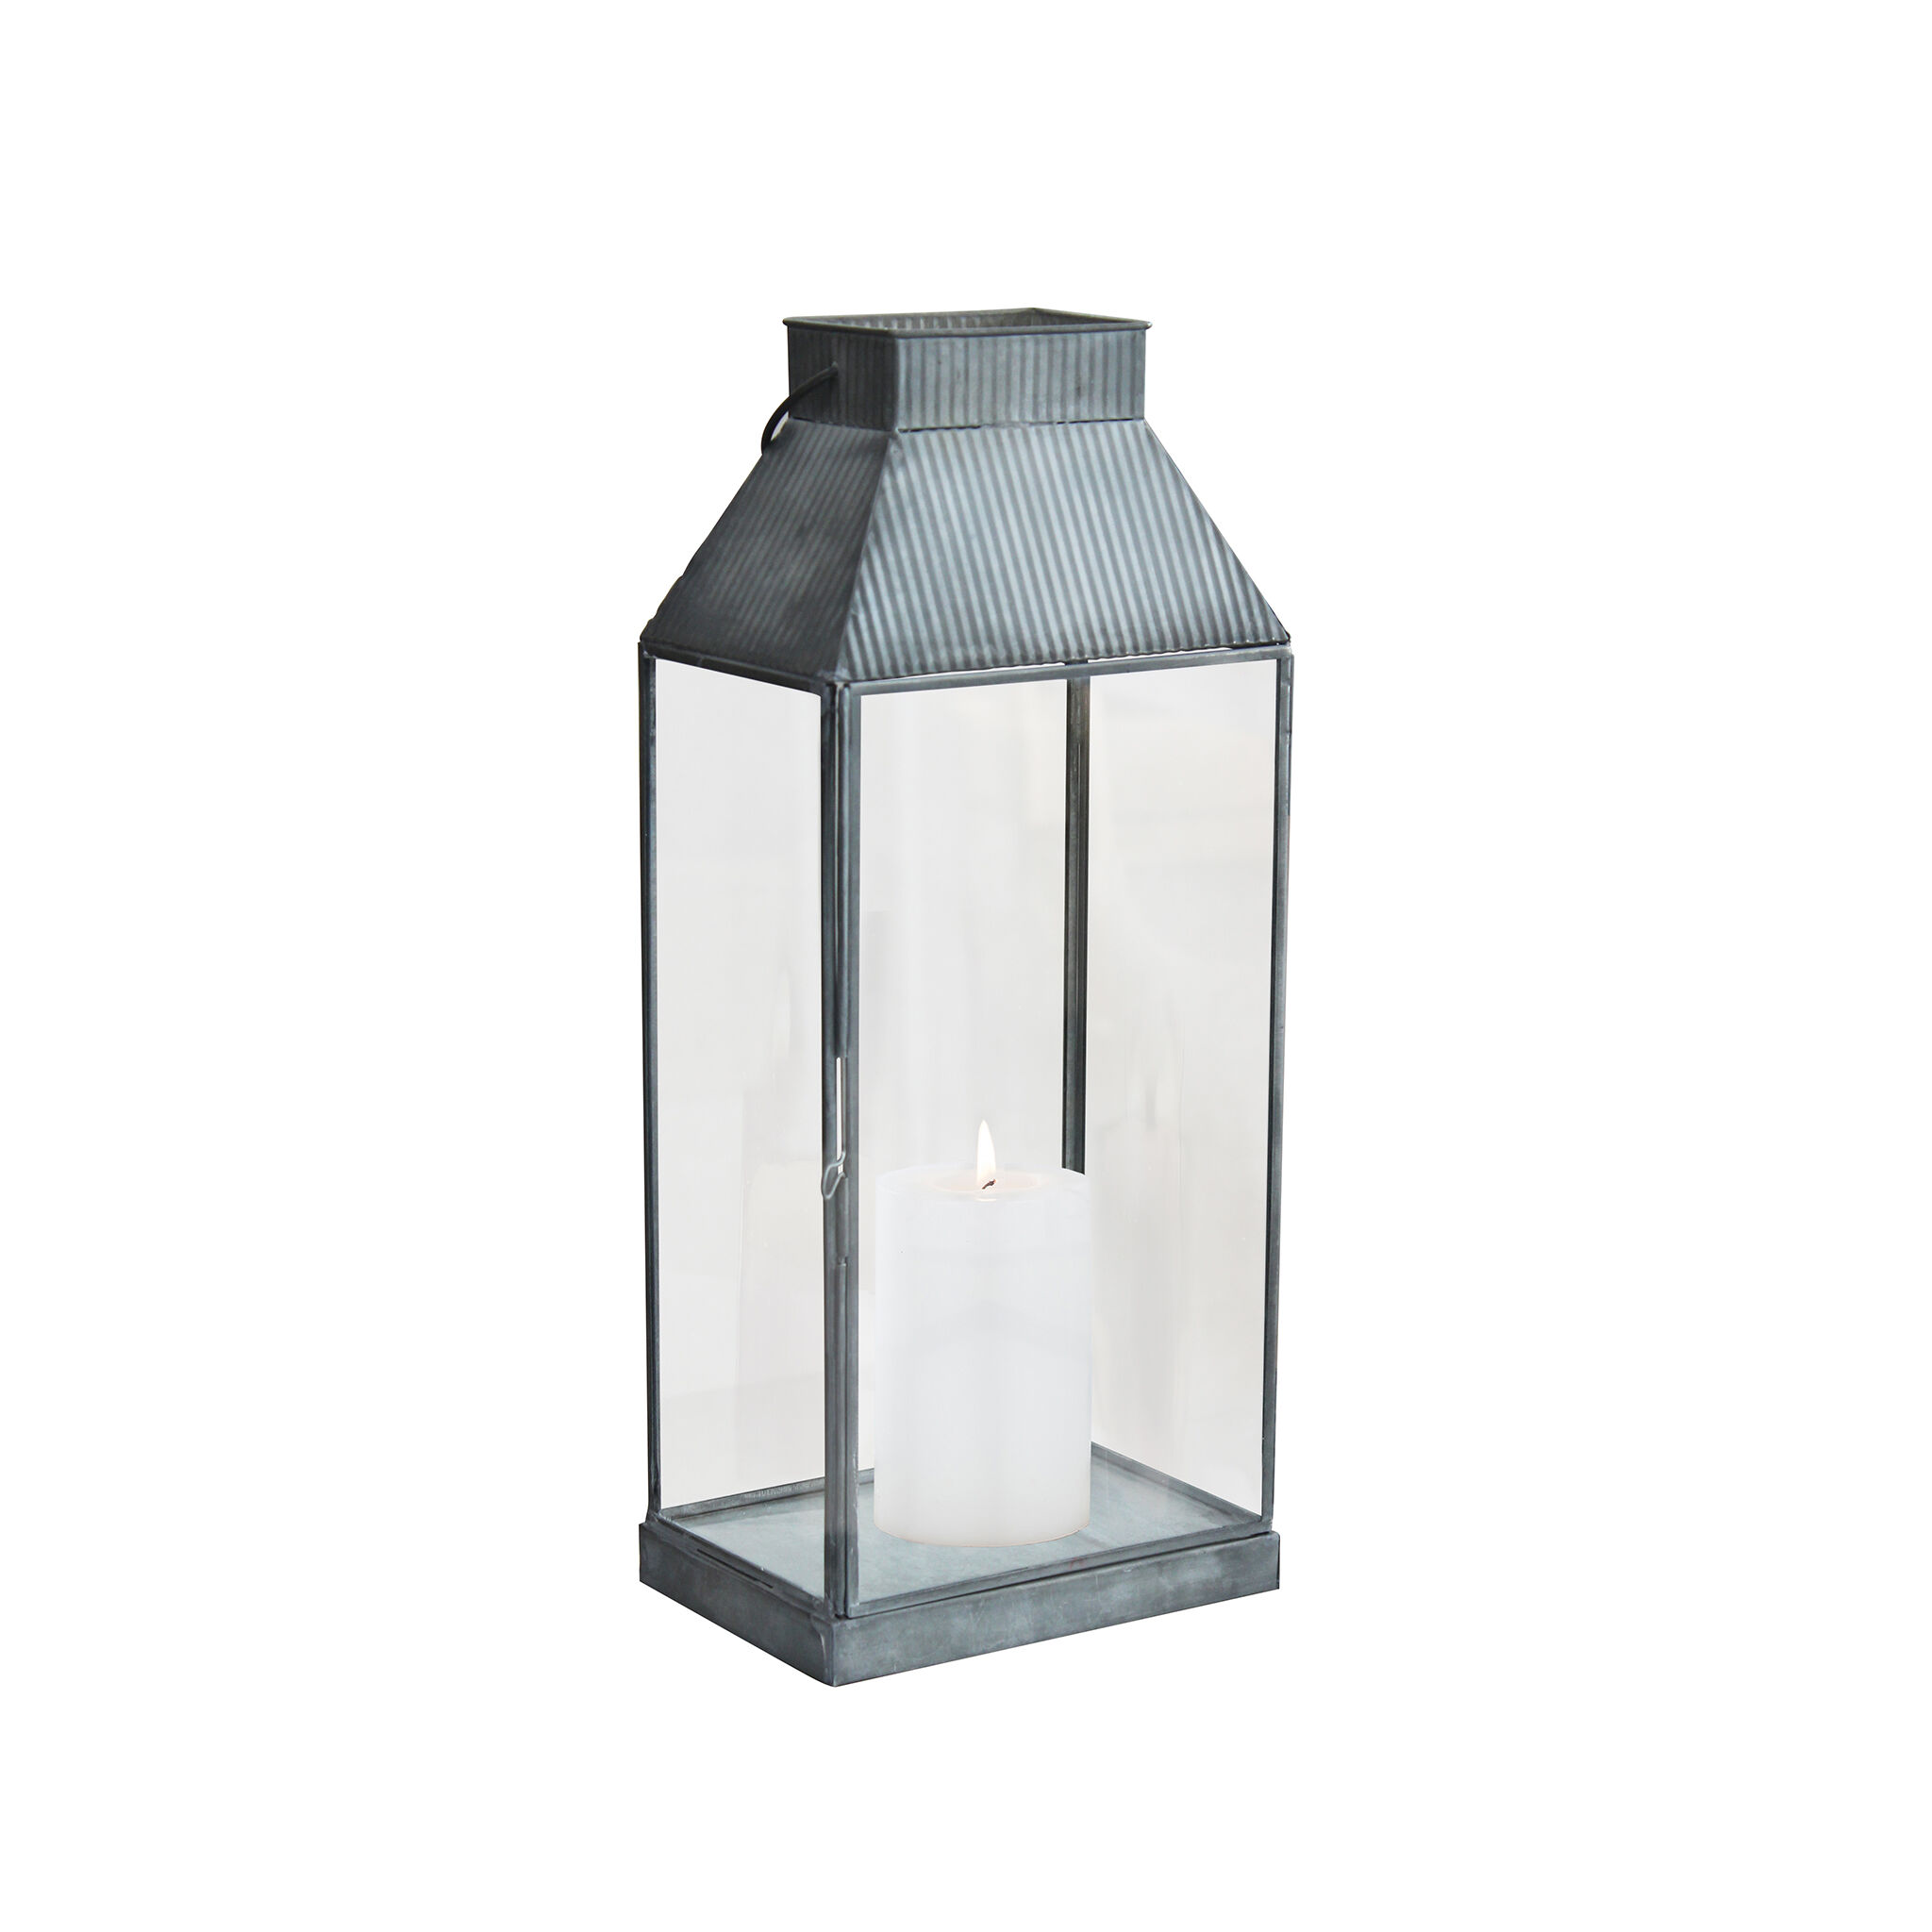 Milani Home lanterna in vetro di design moderno per giardino cm 18 x 12,5 x 41 h Grigio 18 x 41 x 12.5 cm